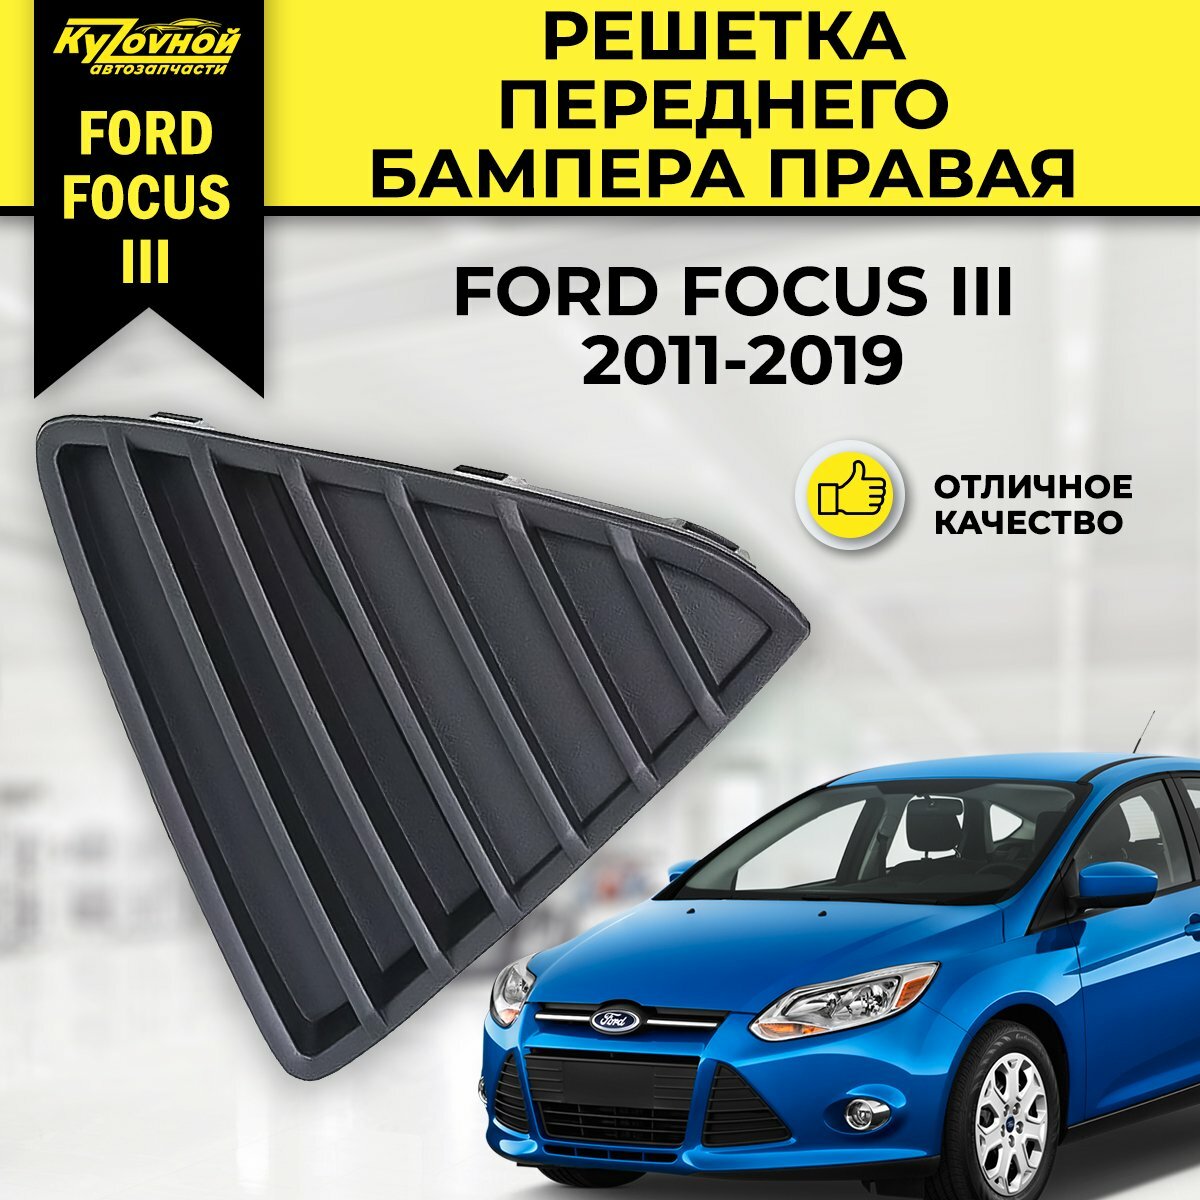 Решетка переднего бампера правая для FORD FOCUS III 2011-2019